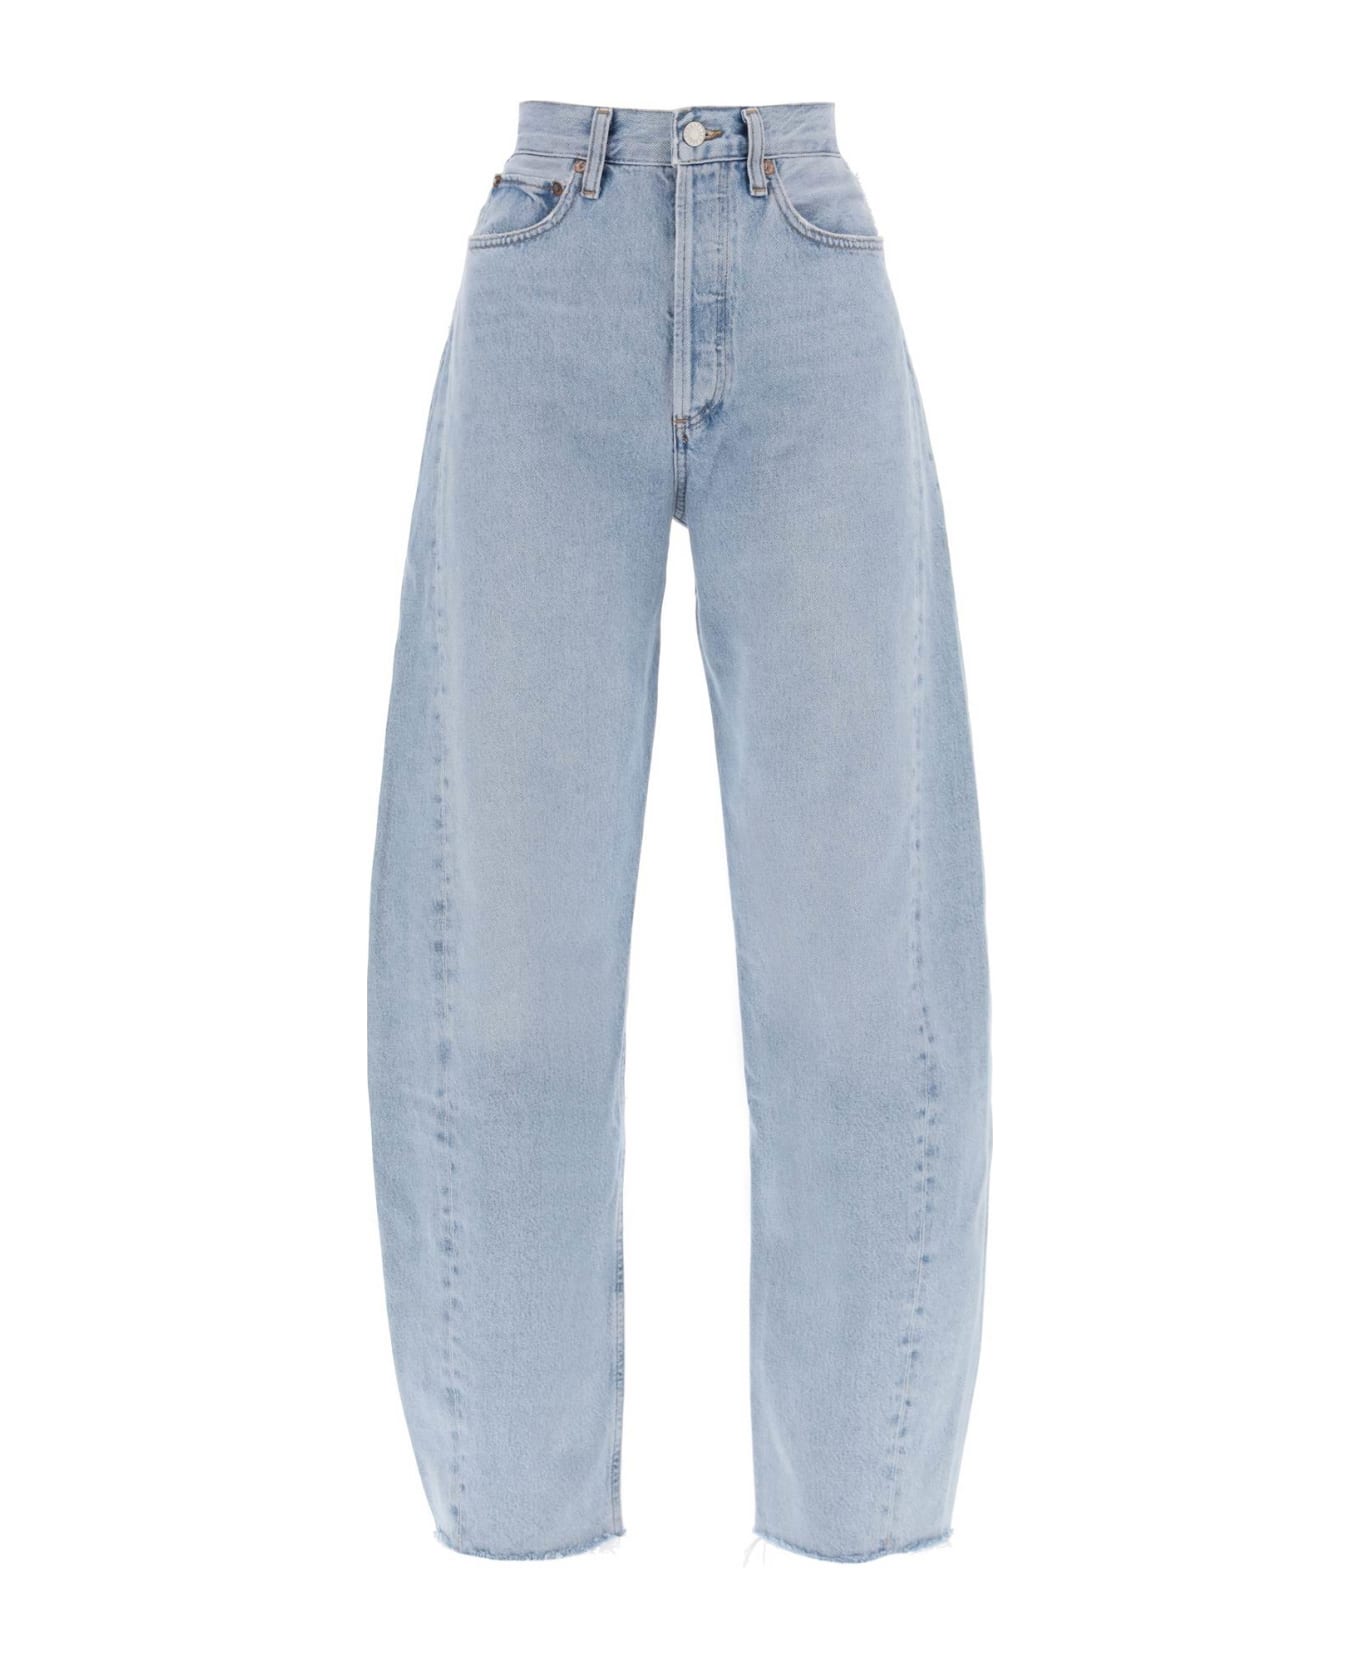 AGOLDE Luna Curved Leg Jeans - Blu Denim